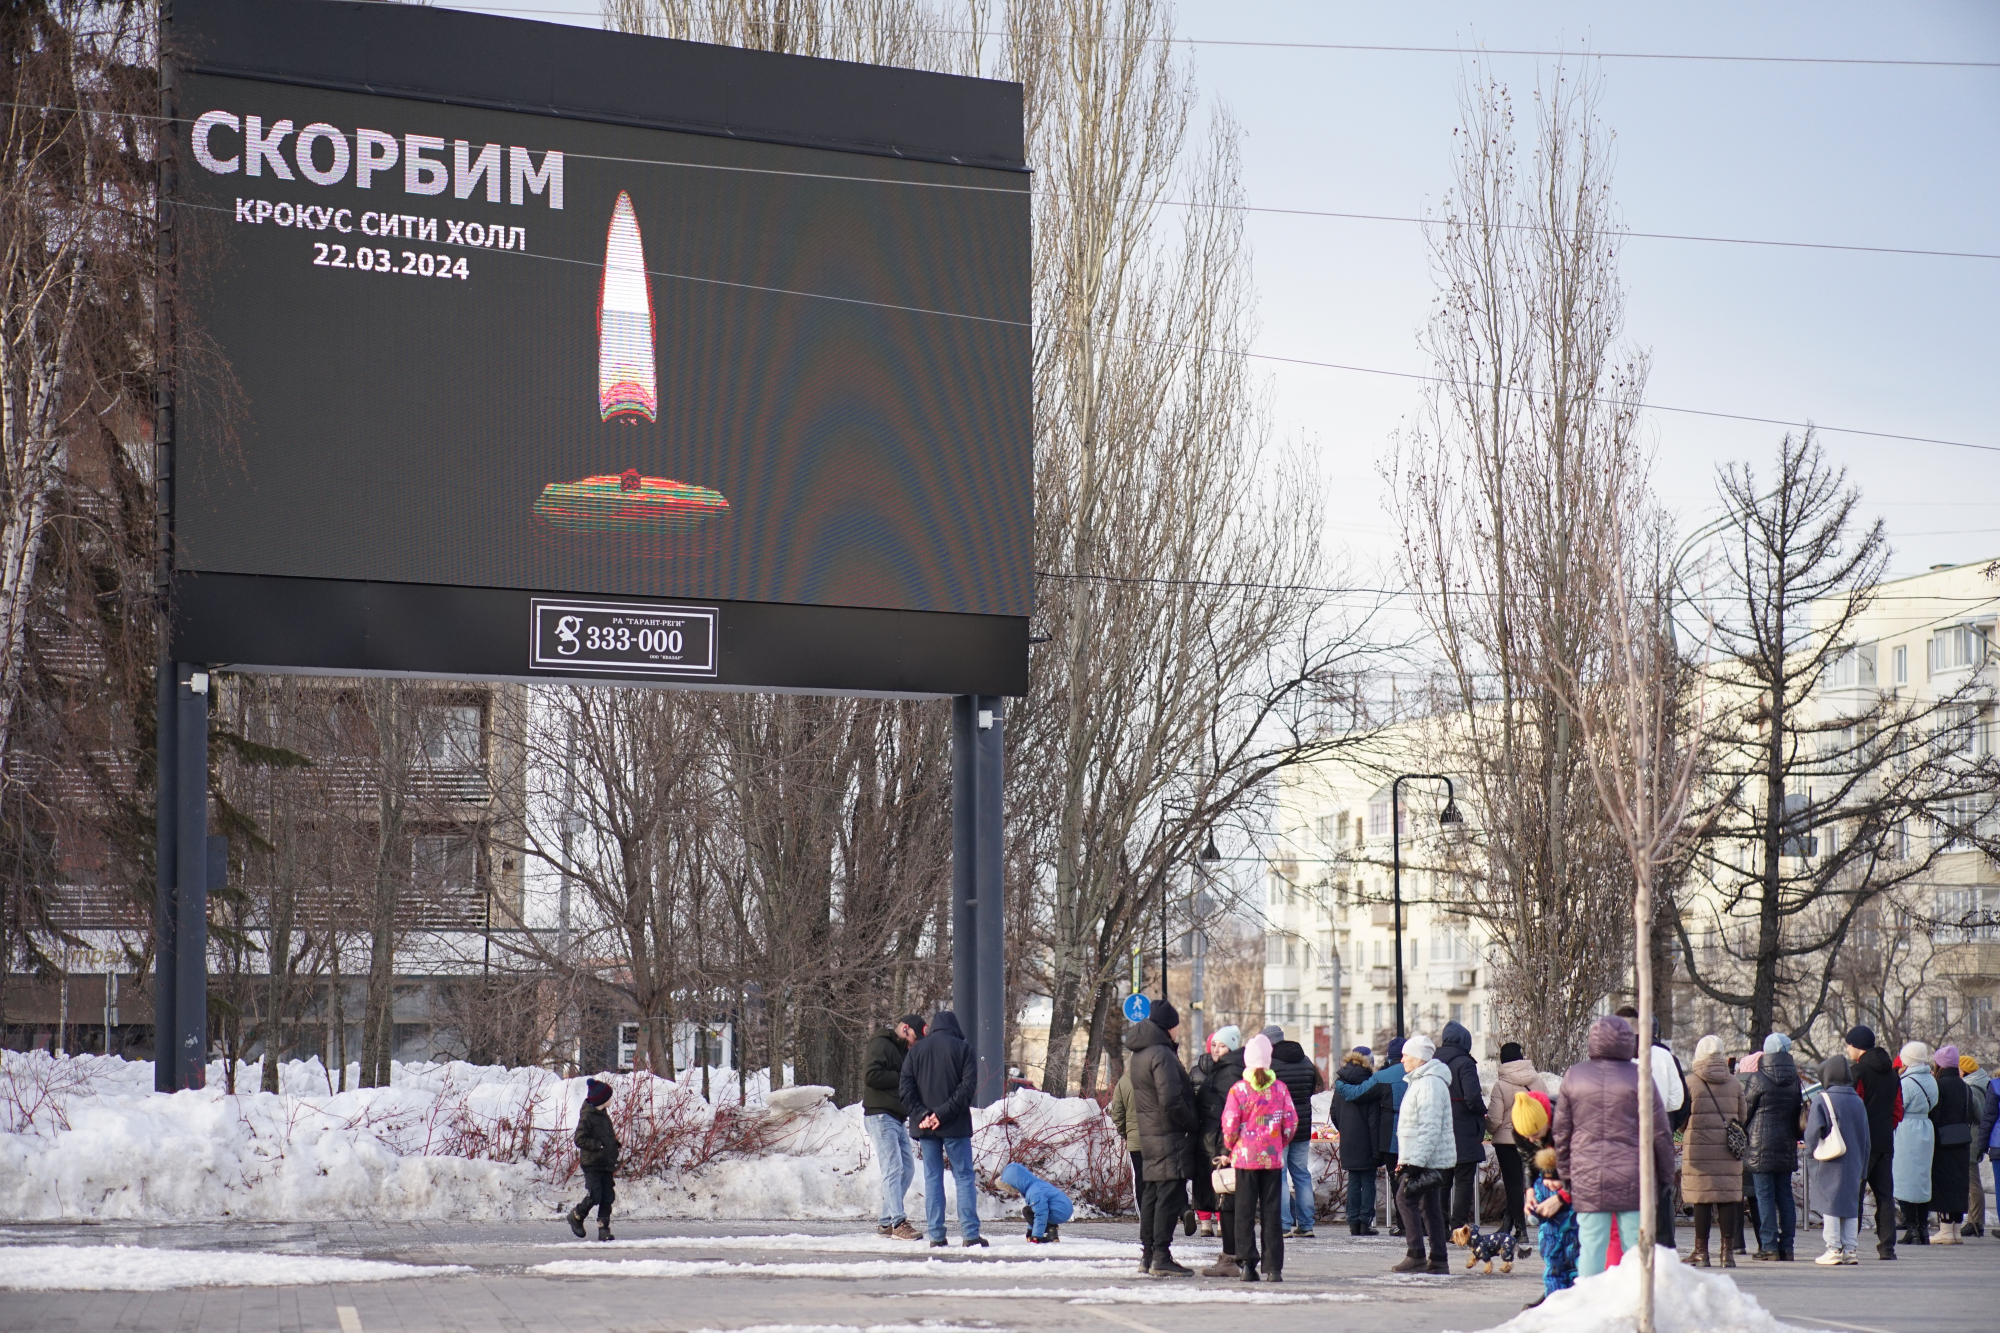 Пострадавшие во время теракта жители Удмуртии, Пермского края и других регионов получили первые выплаты 